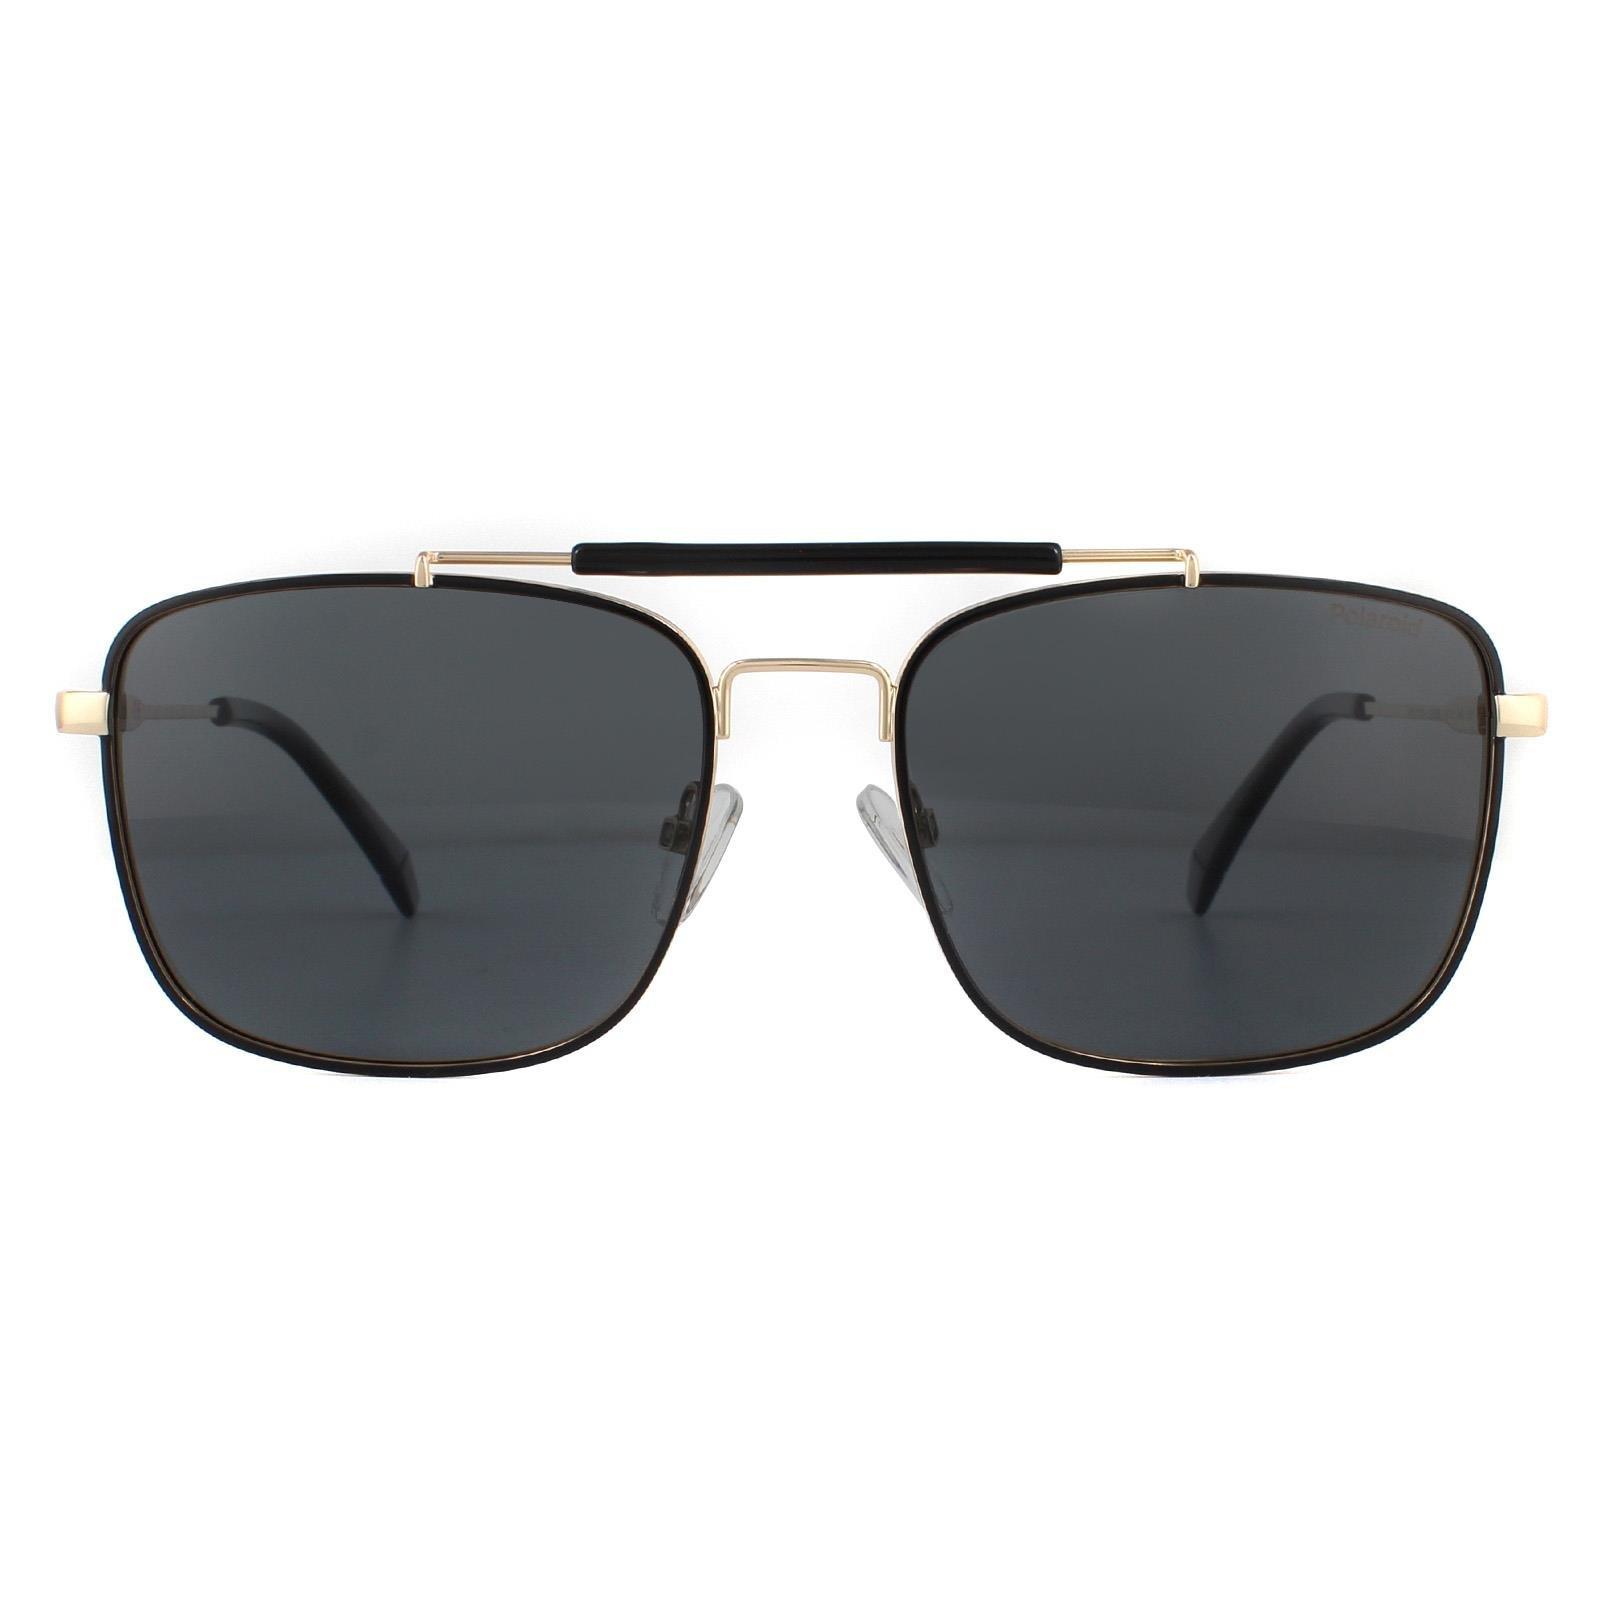 Поляризованные солнцезащитные очки Aviator Black Gold Grey Polaroid, золото polaroid pld 2111 s 2m2 солнцезащитные очки 2m2